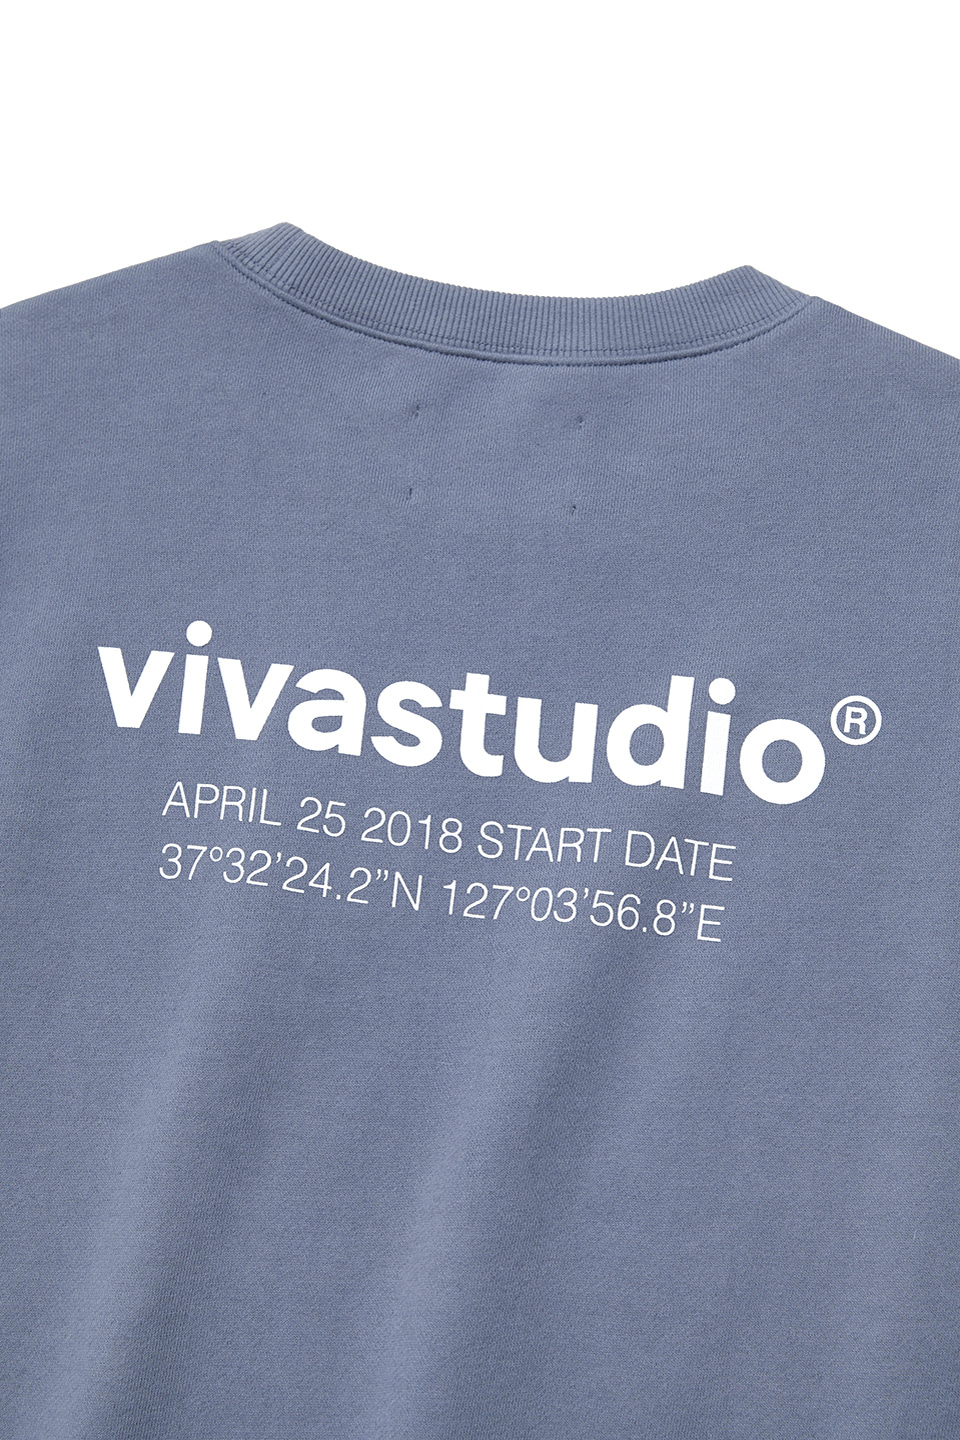 赤字特価セール WINDANDSEA × tee sleeve long vivastudio Tシャツ/カットソー(七分/長袖)